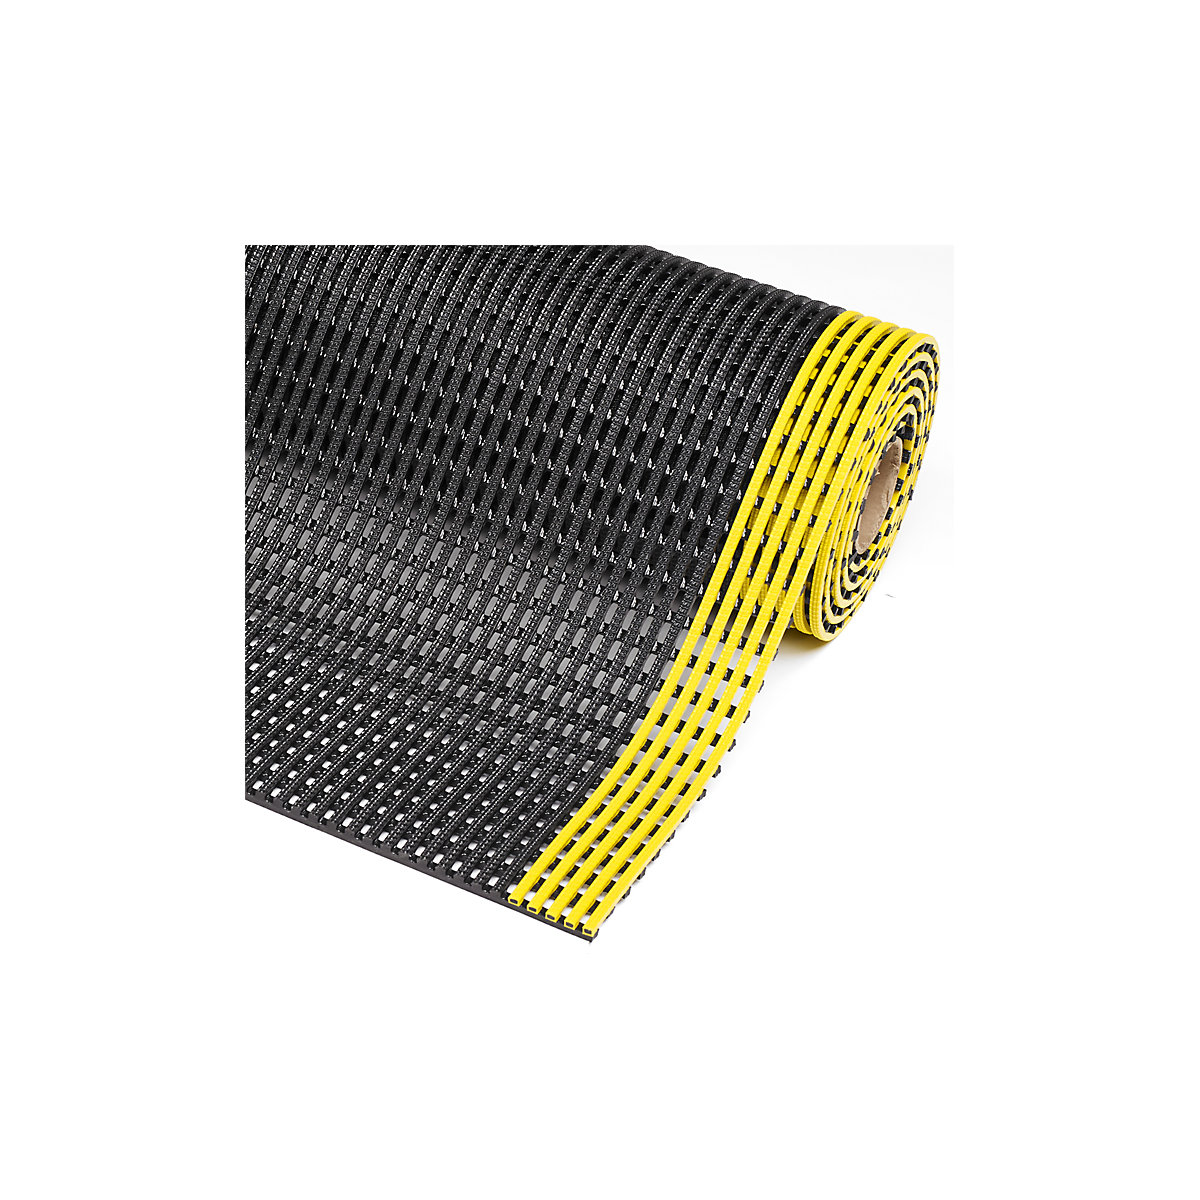 Gaasmat Flexdek™ – NOTRAX, breedte 1200 mm, per str. m, zwart/geel-2